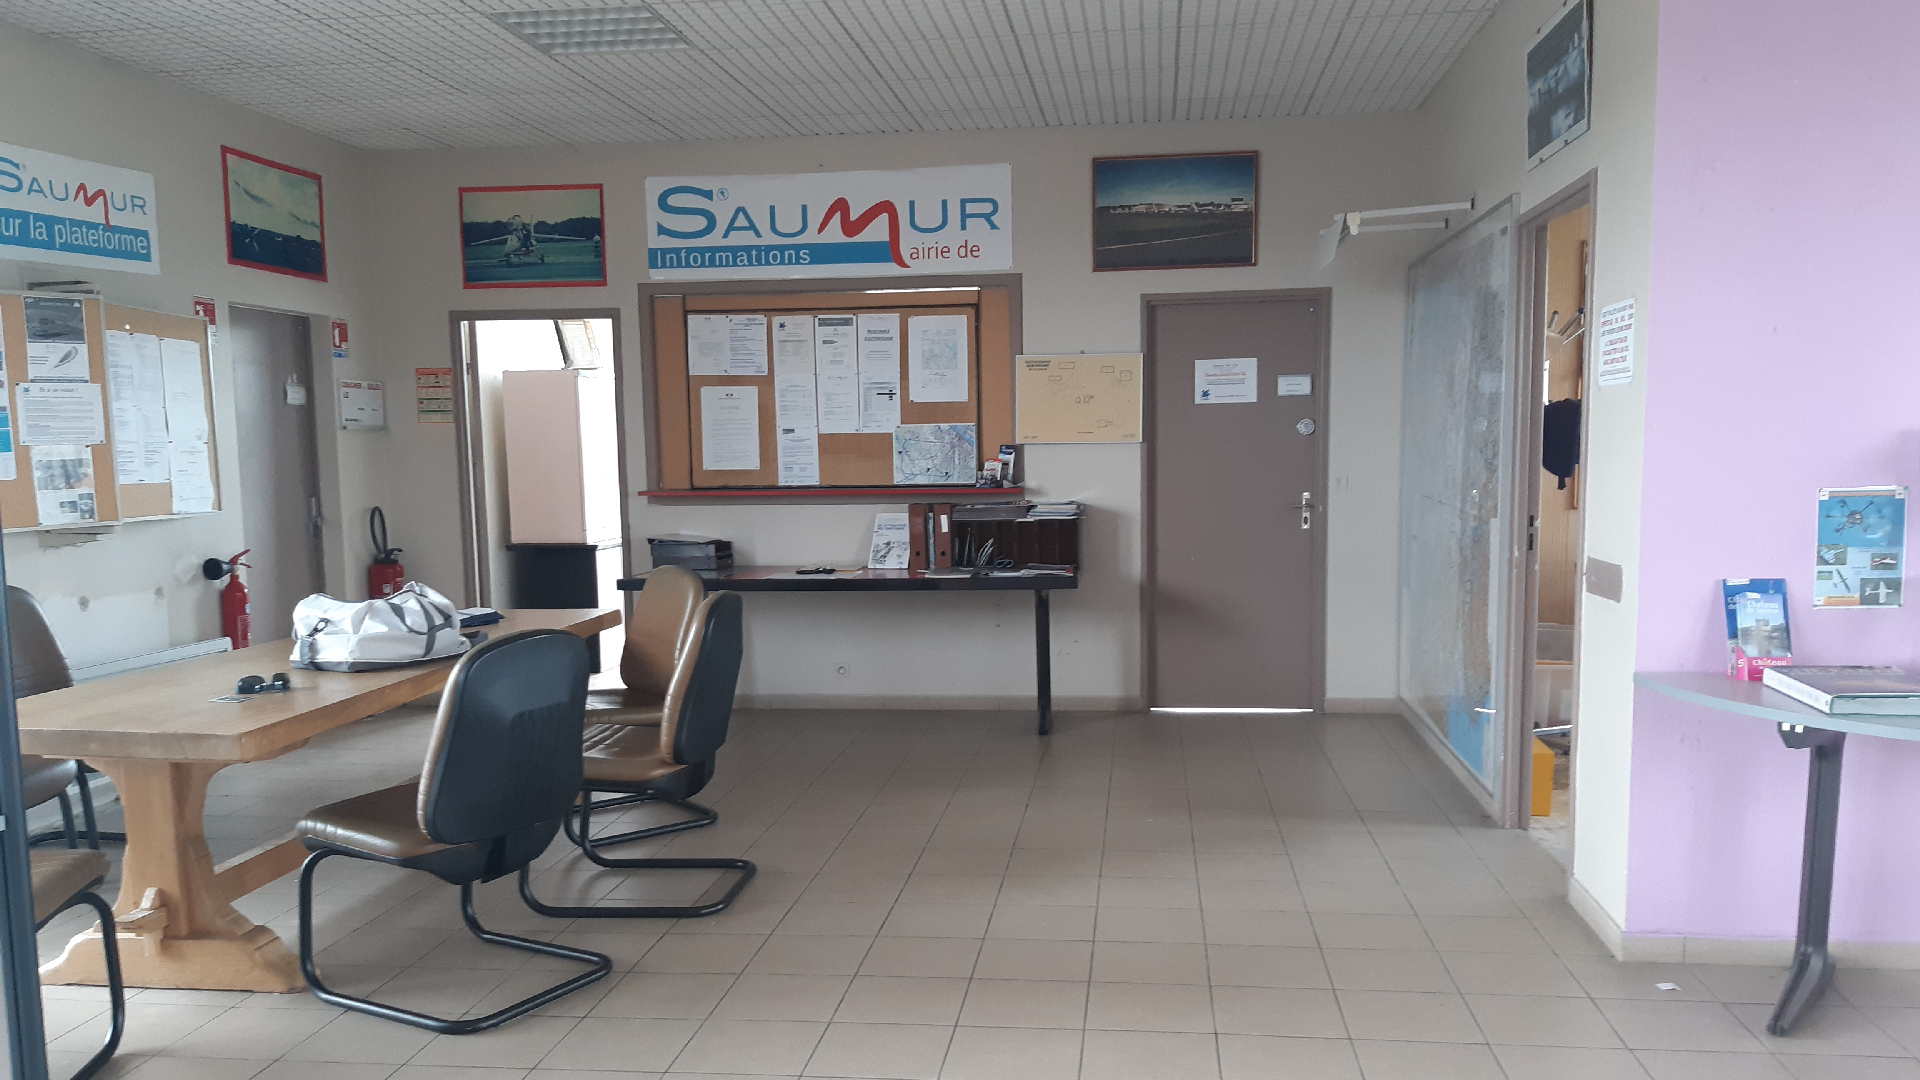 Meeting room at Saumur Air Club